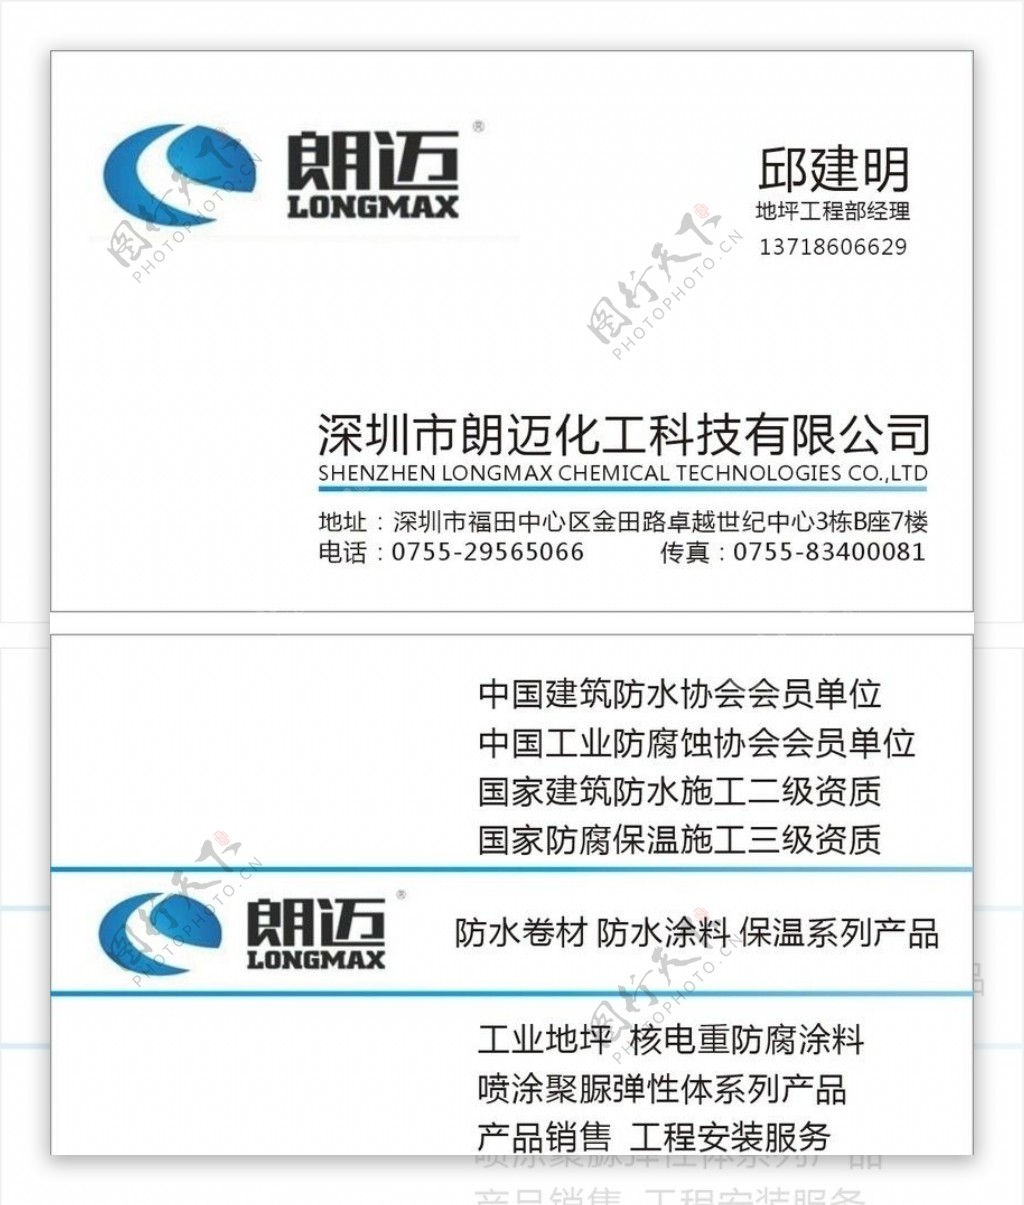 深圳市朗迈化工科技有限公司的名片图片